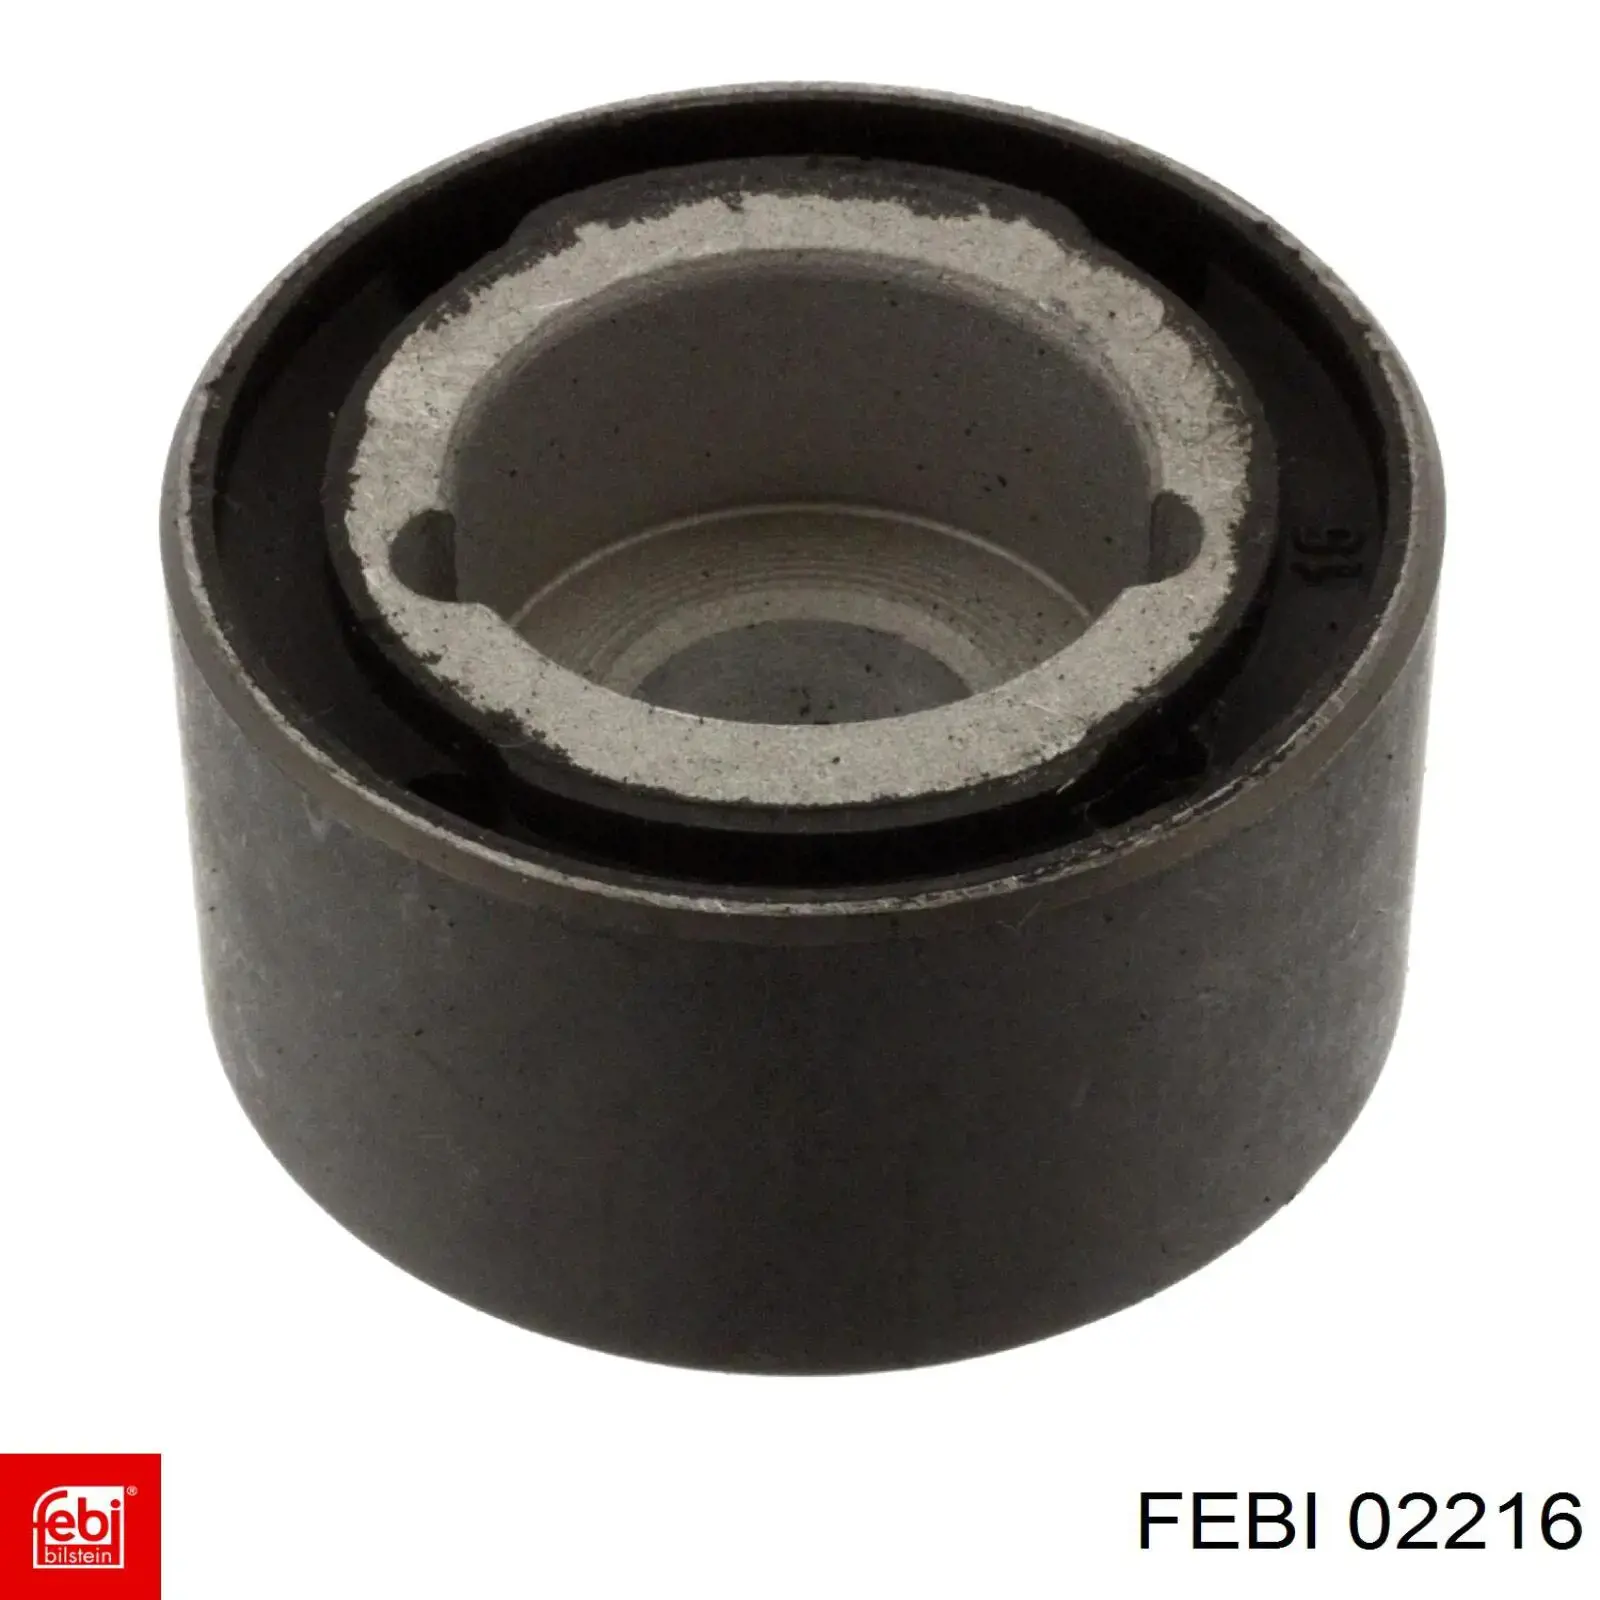 02216 Febi cilindro de freno de rueda trasero